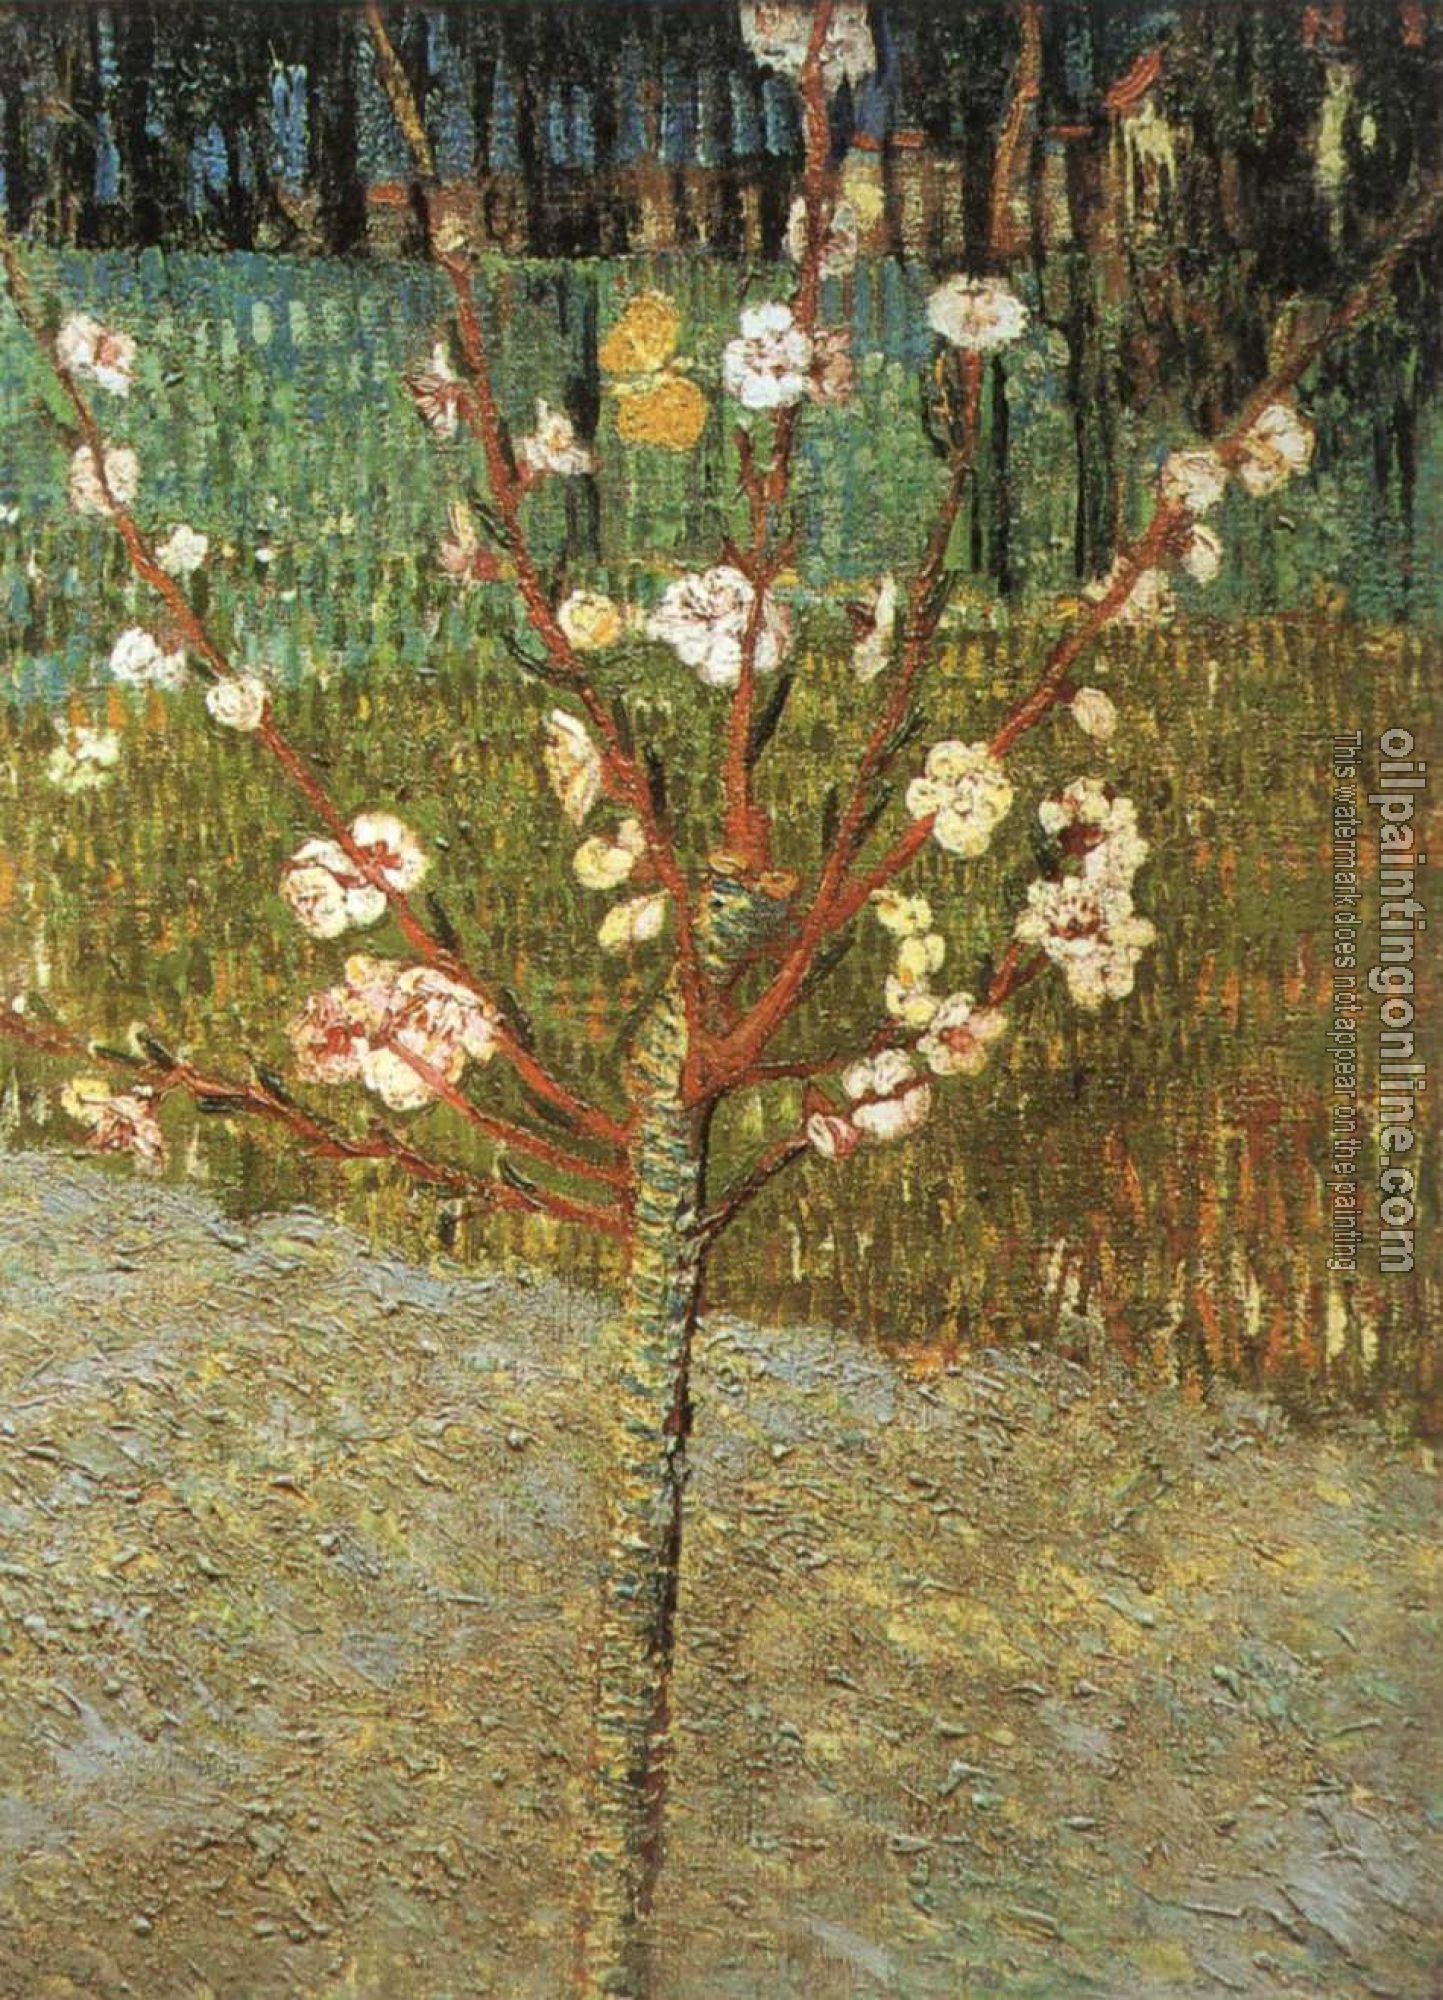 Gogh, Vincent van - Flowering Almond Tree